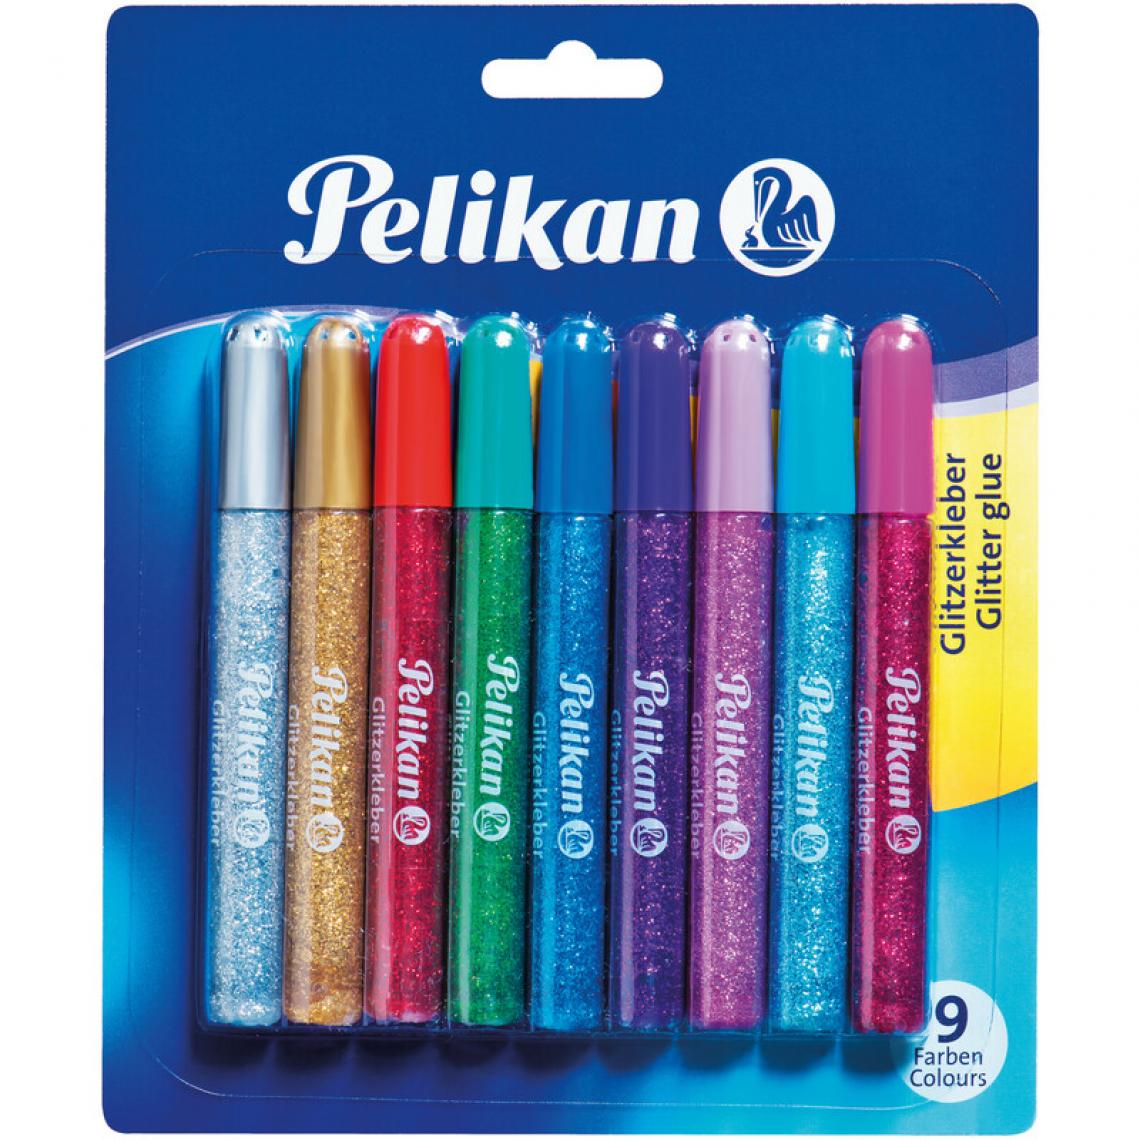 Pelikan - Pelikan Colle à paillettes, 9 x 10,5 ml, carte blister () - Colles et pistolets à colle